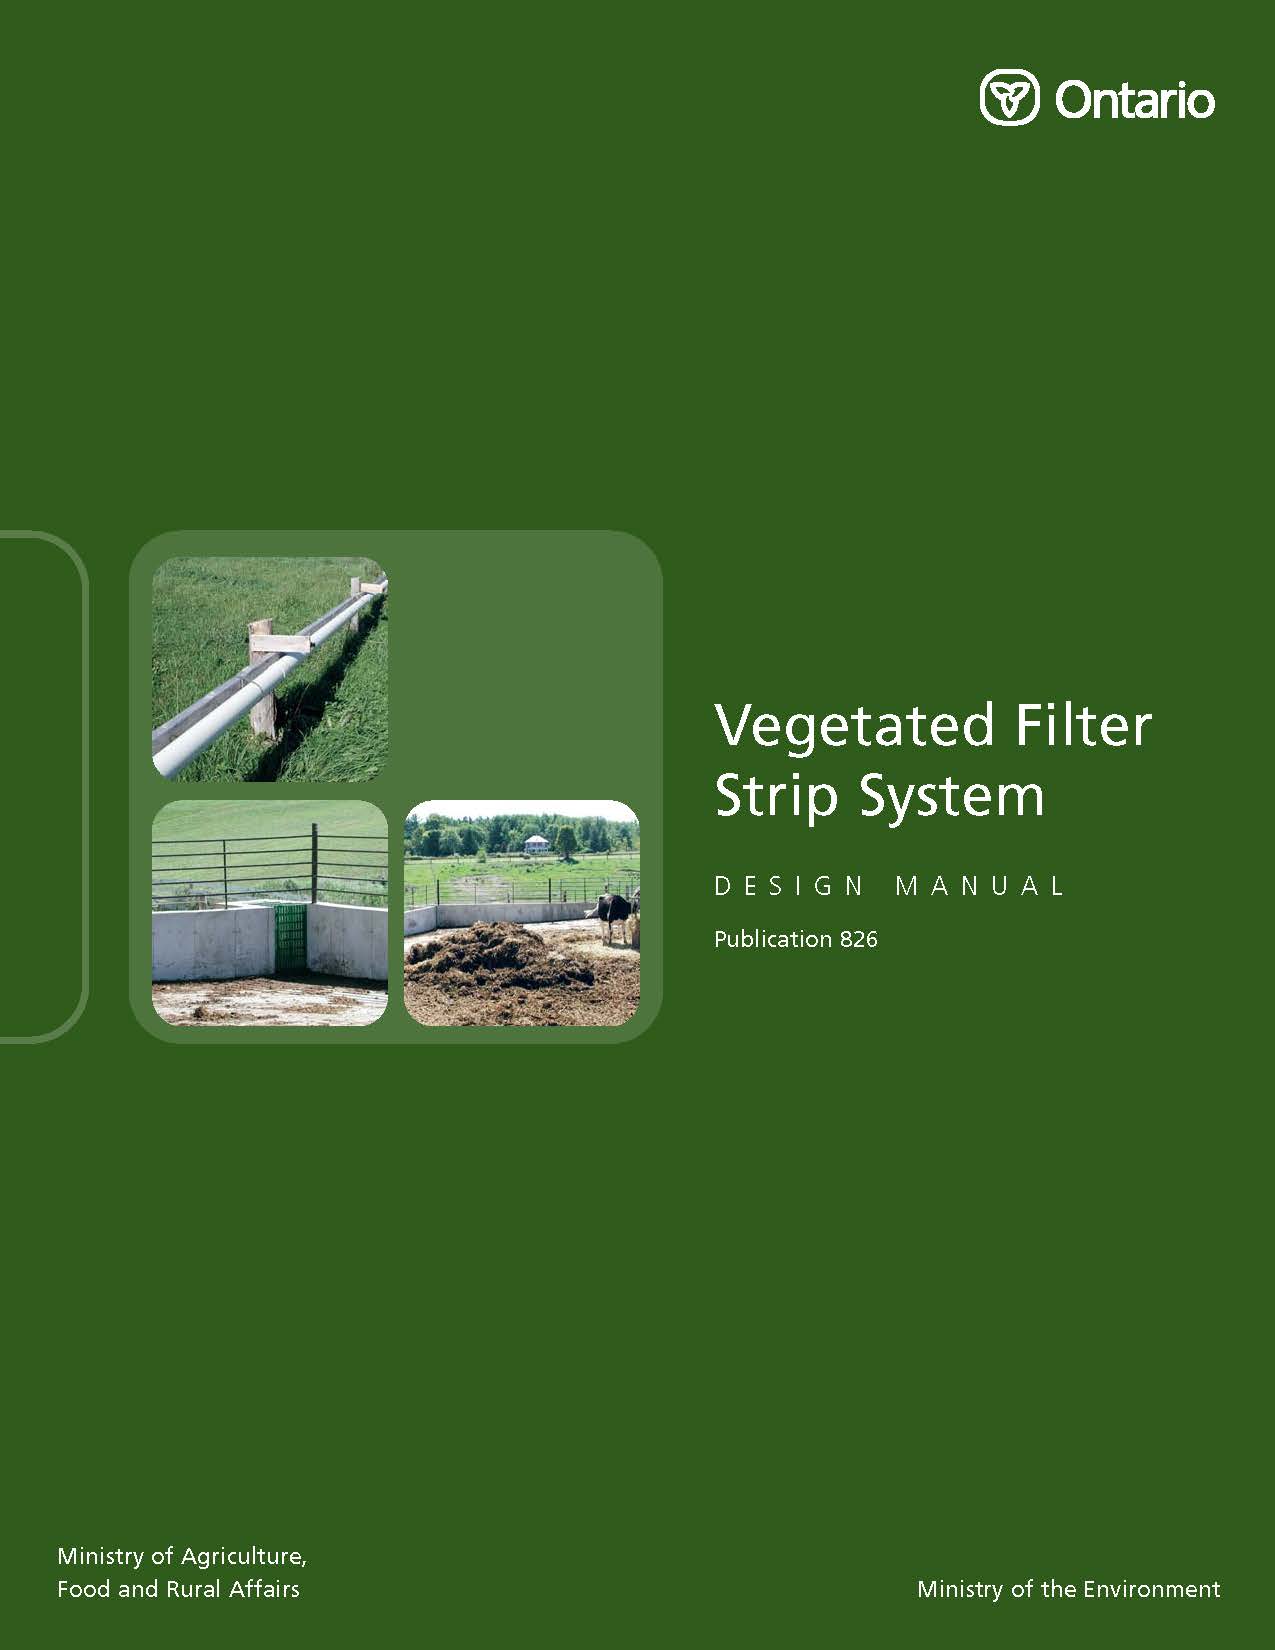 Vegetated Filter Strip System Design Manual